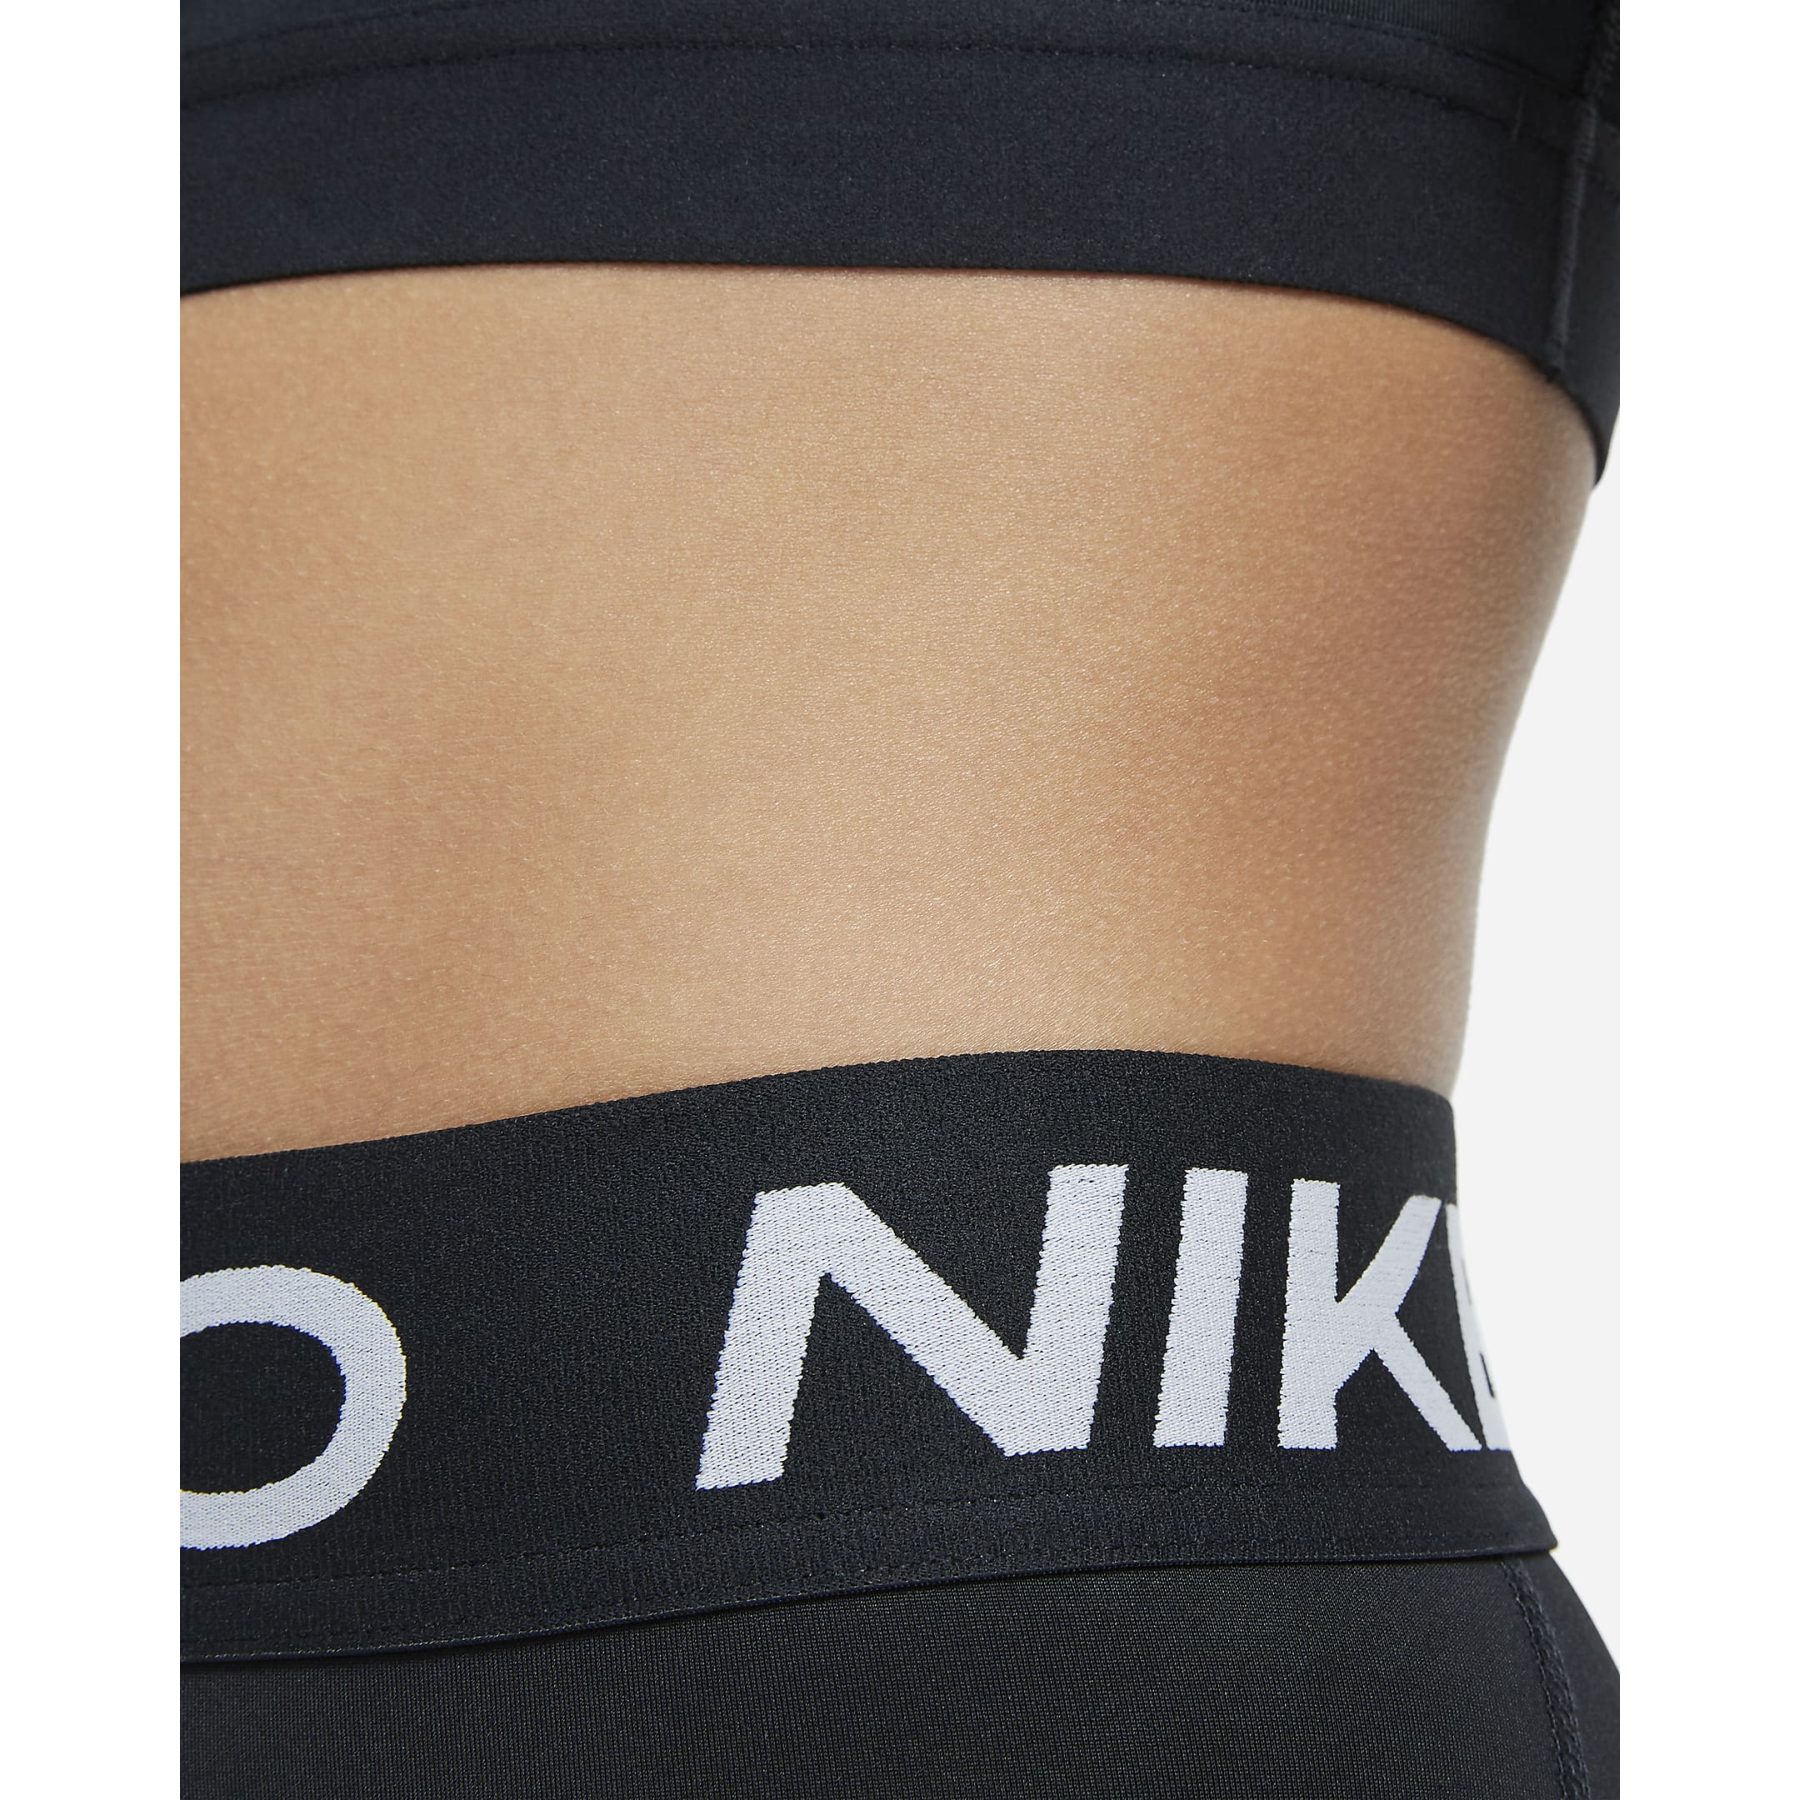 Nike Pro 3/4 Tights Kids - black/white DA1026-010